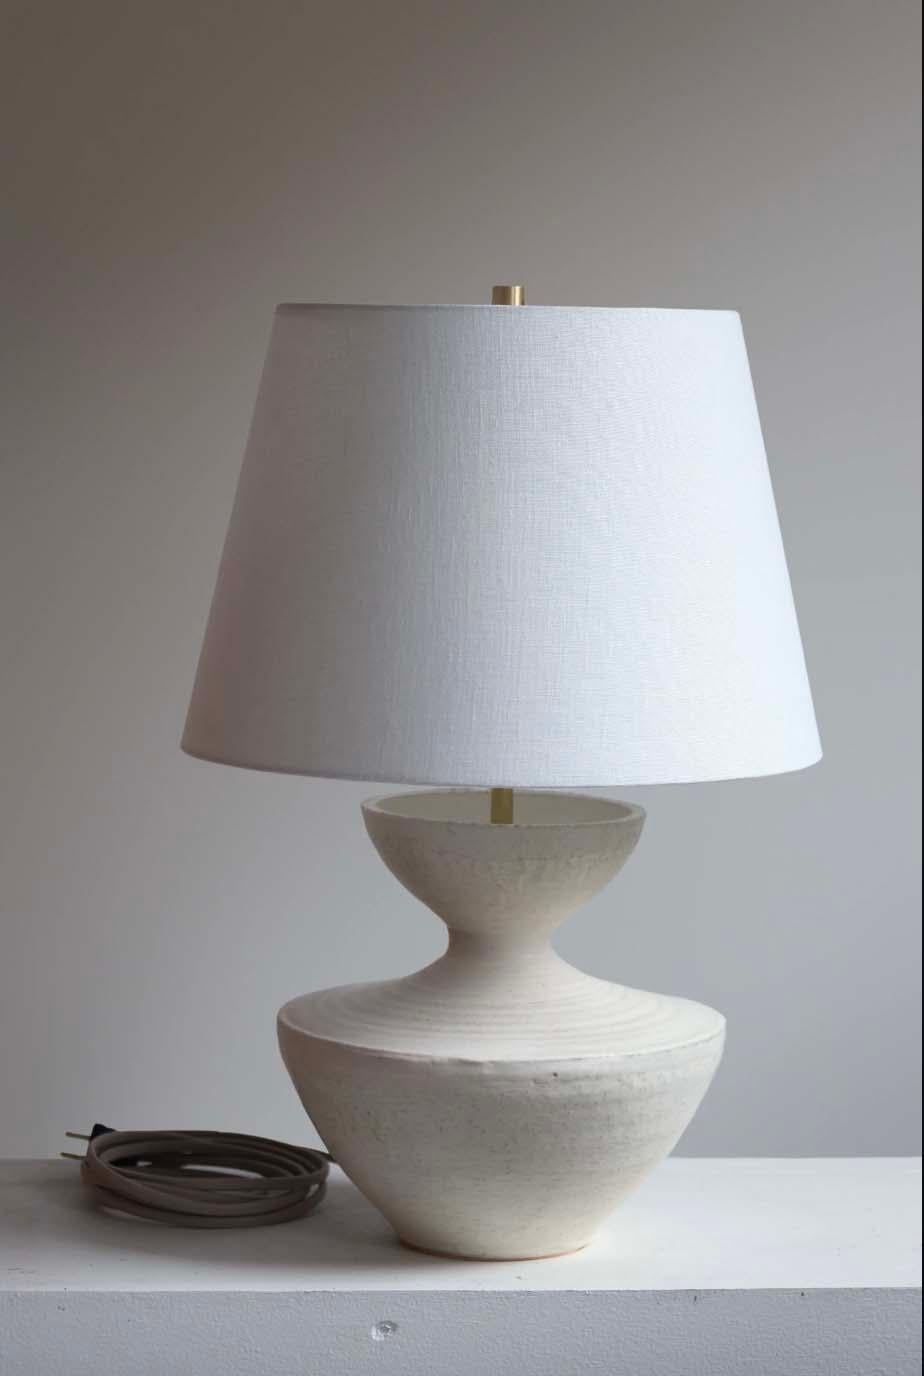 Die Tauria-Lampe ist eine handgefertigte Studiotöpferei des Keramikkünstlers Danny Kaplan. Inklusive Lampenschirm. Bitte beachten Sie, dass die genauen Abmessungen variieren können.

Geboren in New York City und aufgewachsen in Aix-en-Provence,